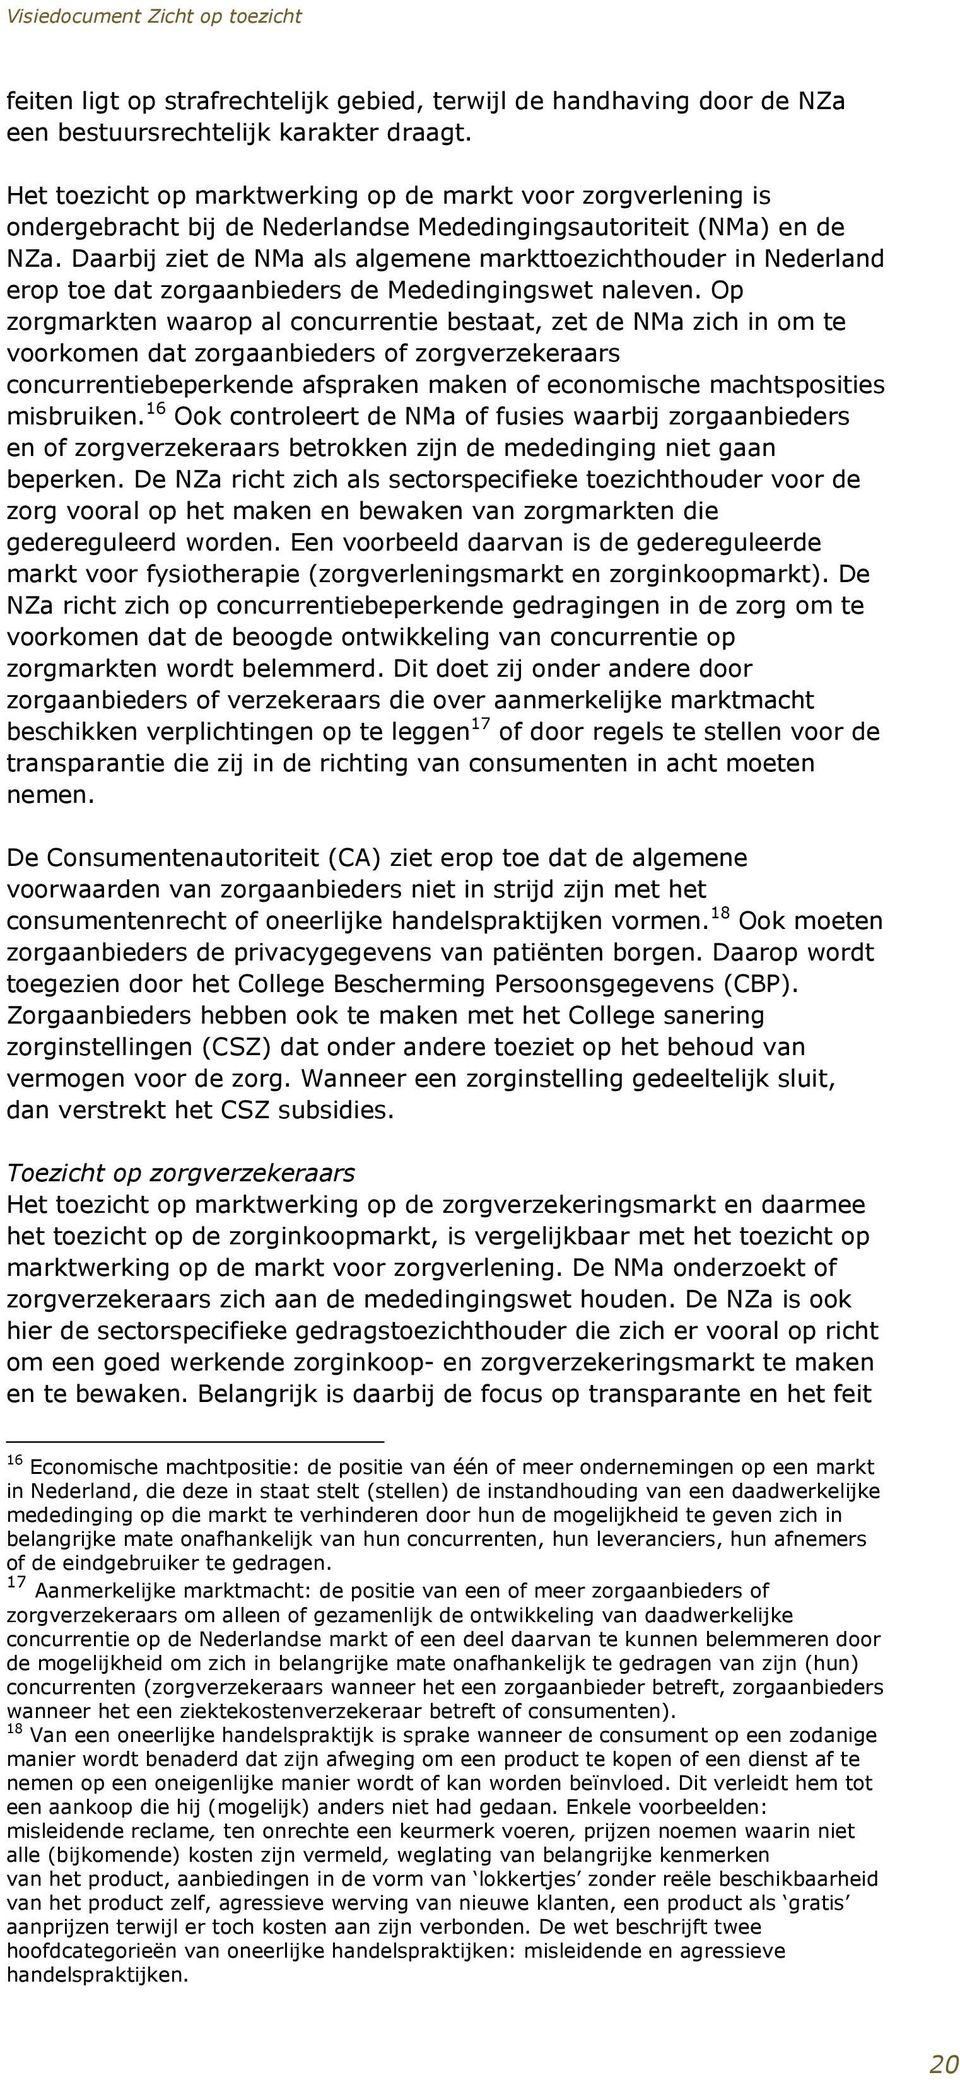 Daarbij ziet de NMa als algemene markttoezichthouder in Nederland erop toe dat zorgaanbieders de Mededingingswet naleven.